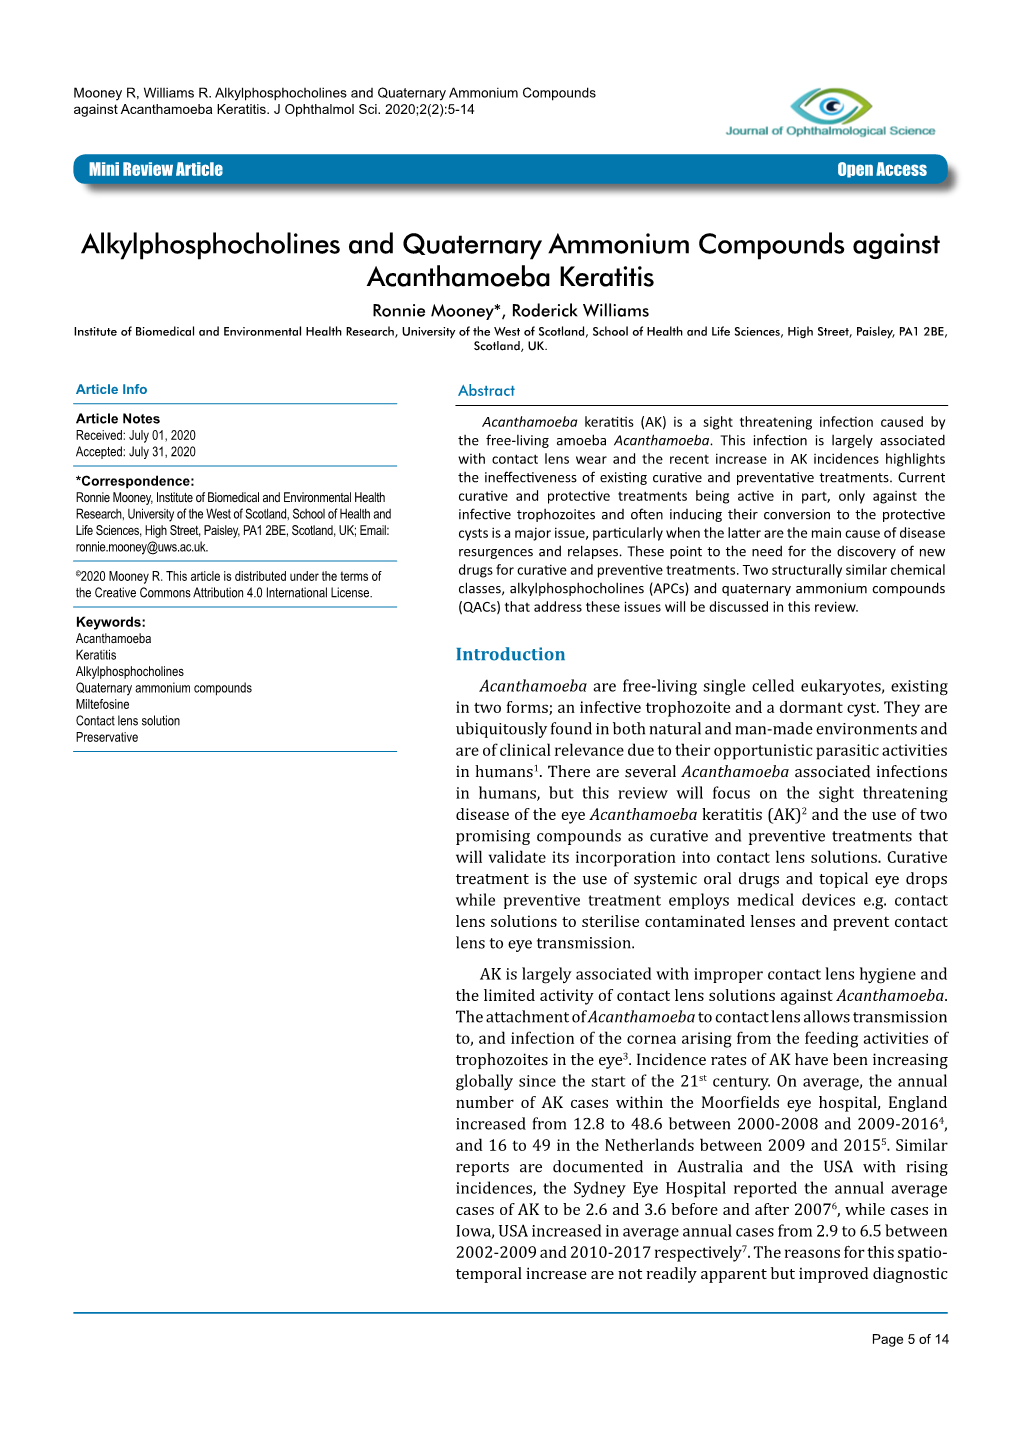 Alkylphosphocholines and Quaternary Ammonium Compounds Against Acanthamoeba Keratitis